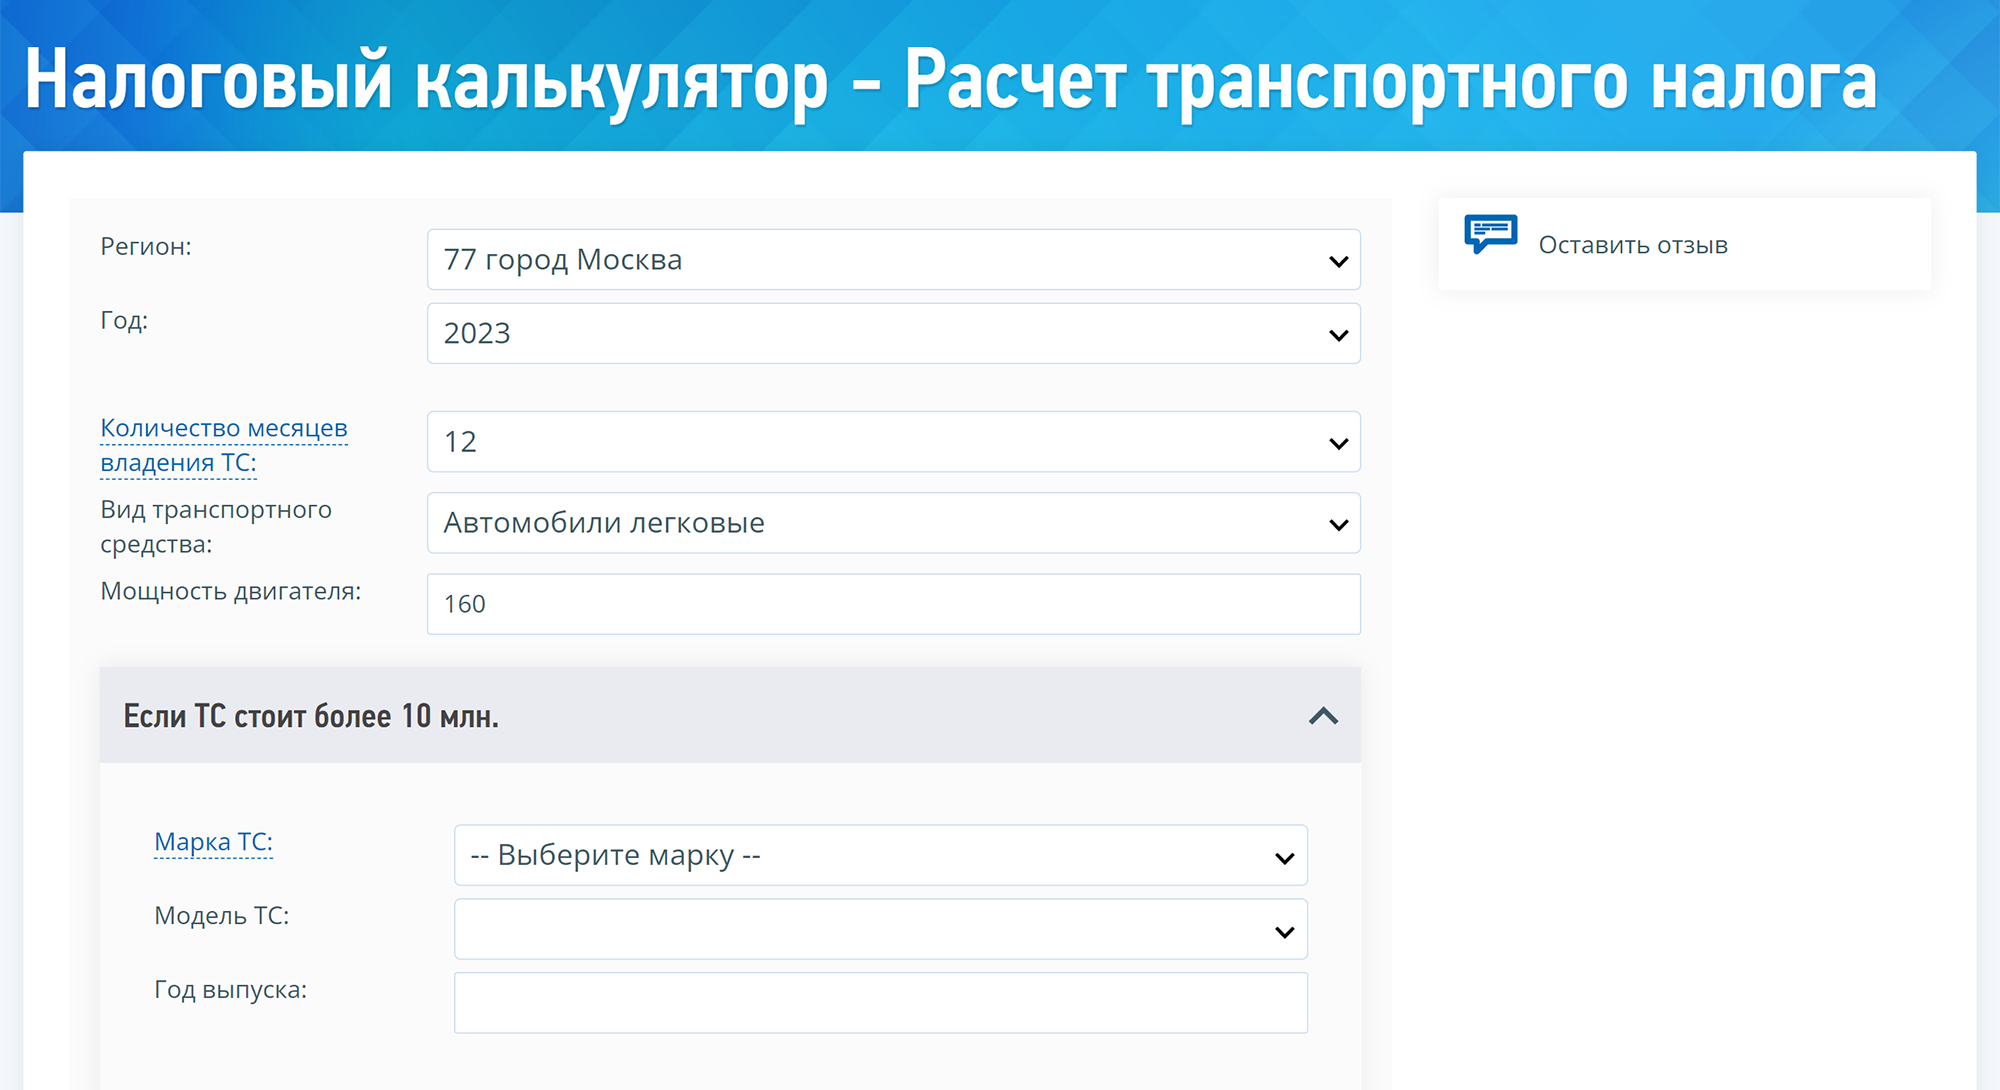 Со списком Минпромторга калькулятор не связан — при подготовке статьи выбрать модель автомобиля не удалось. Источник: nalog.gov.ru